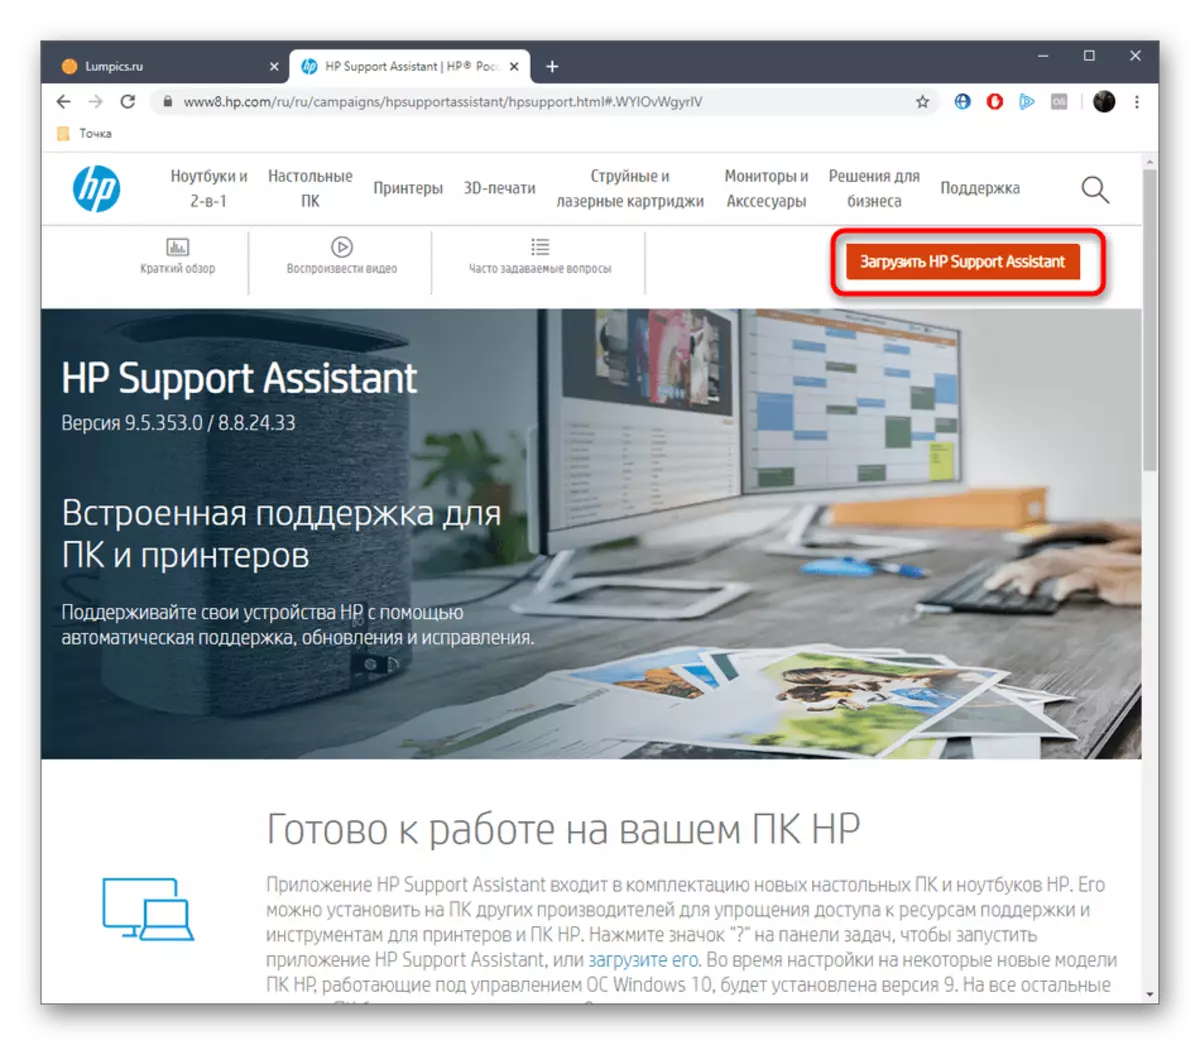 Exécution de l'utilitaire de téléchargement HP Support Assistant depuis le site officiel